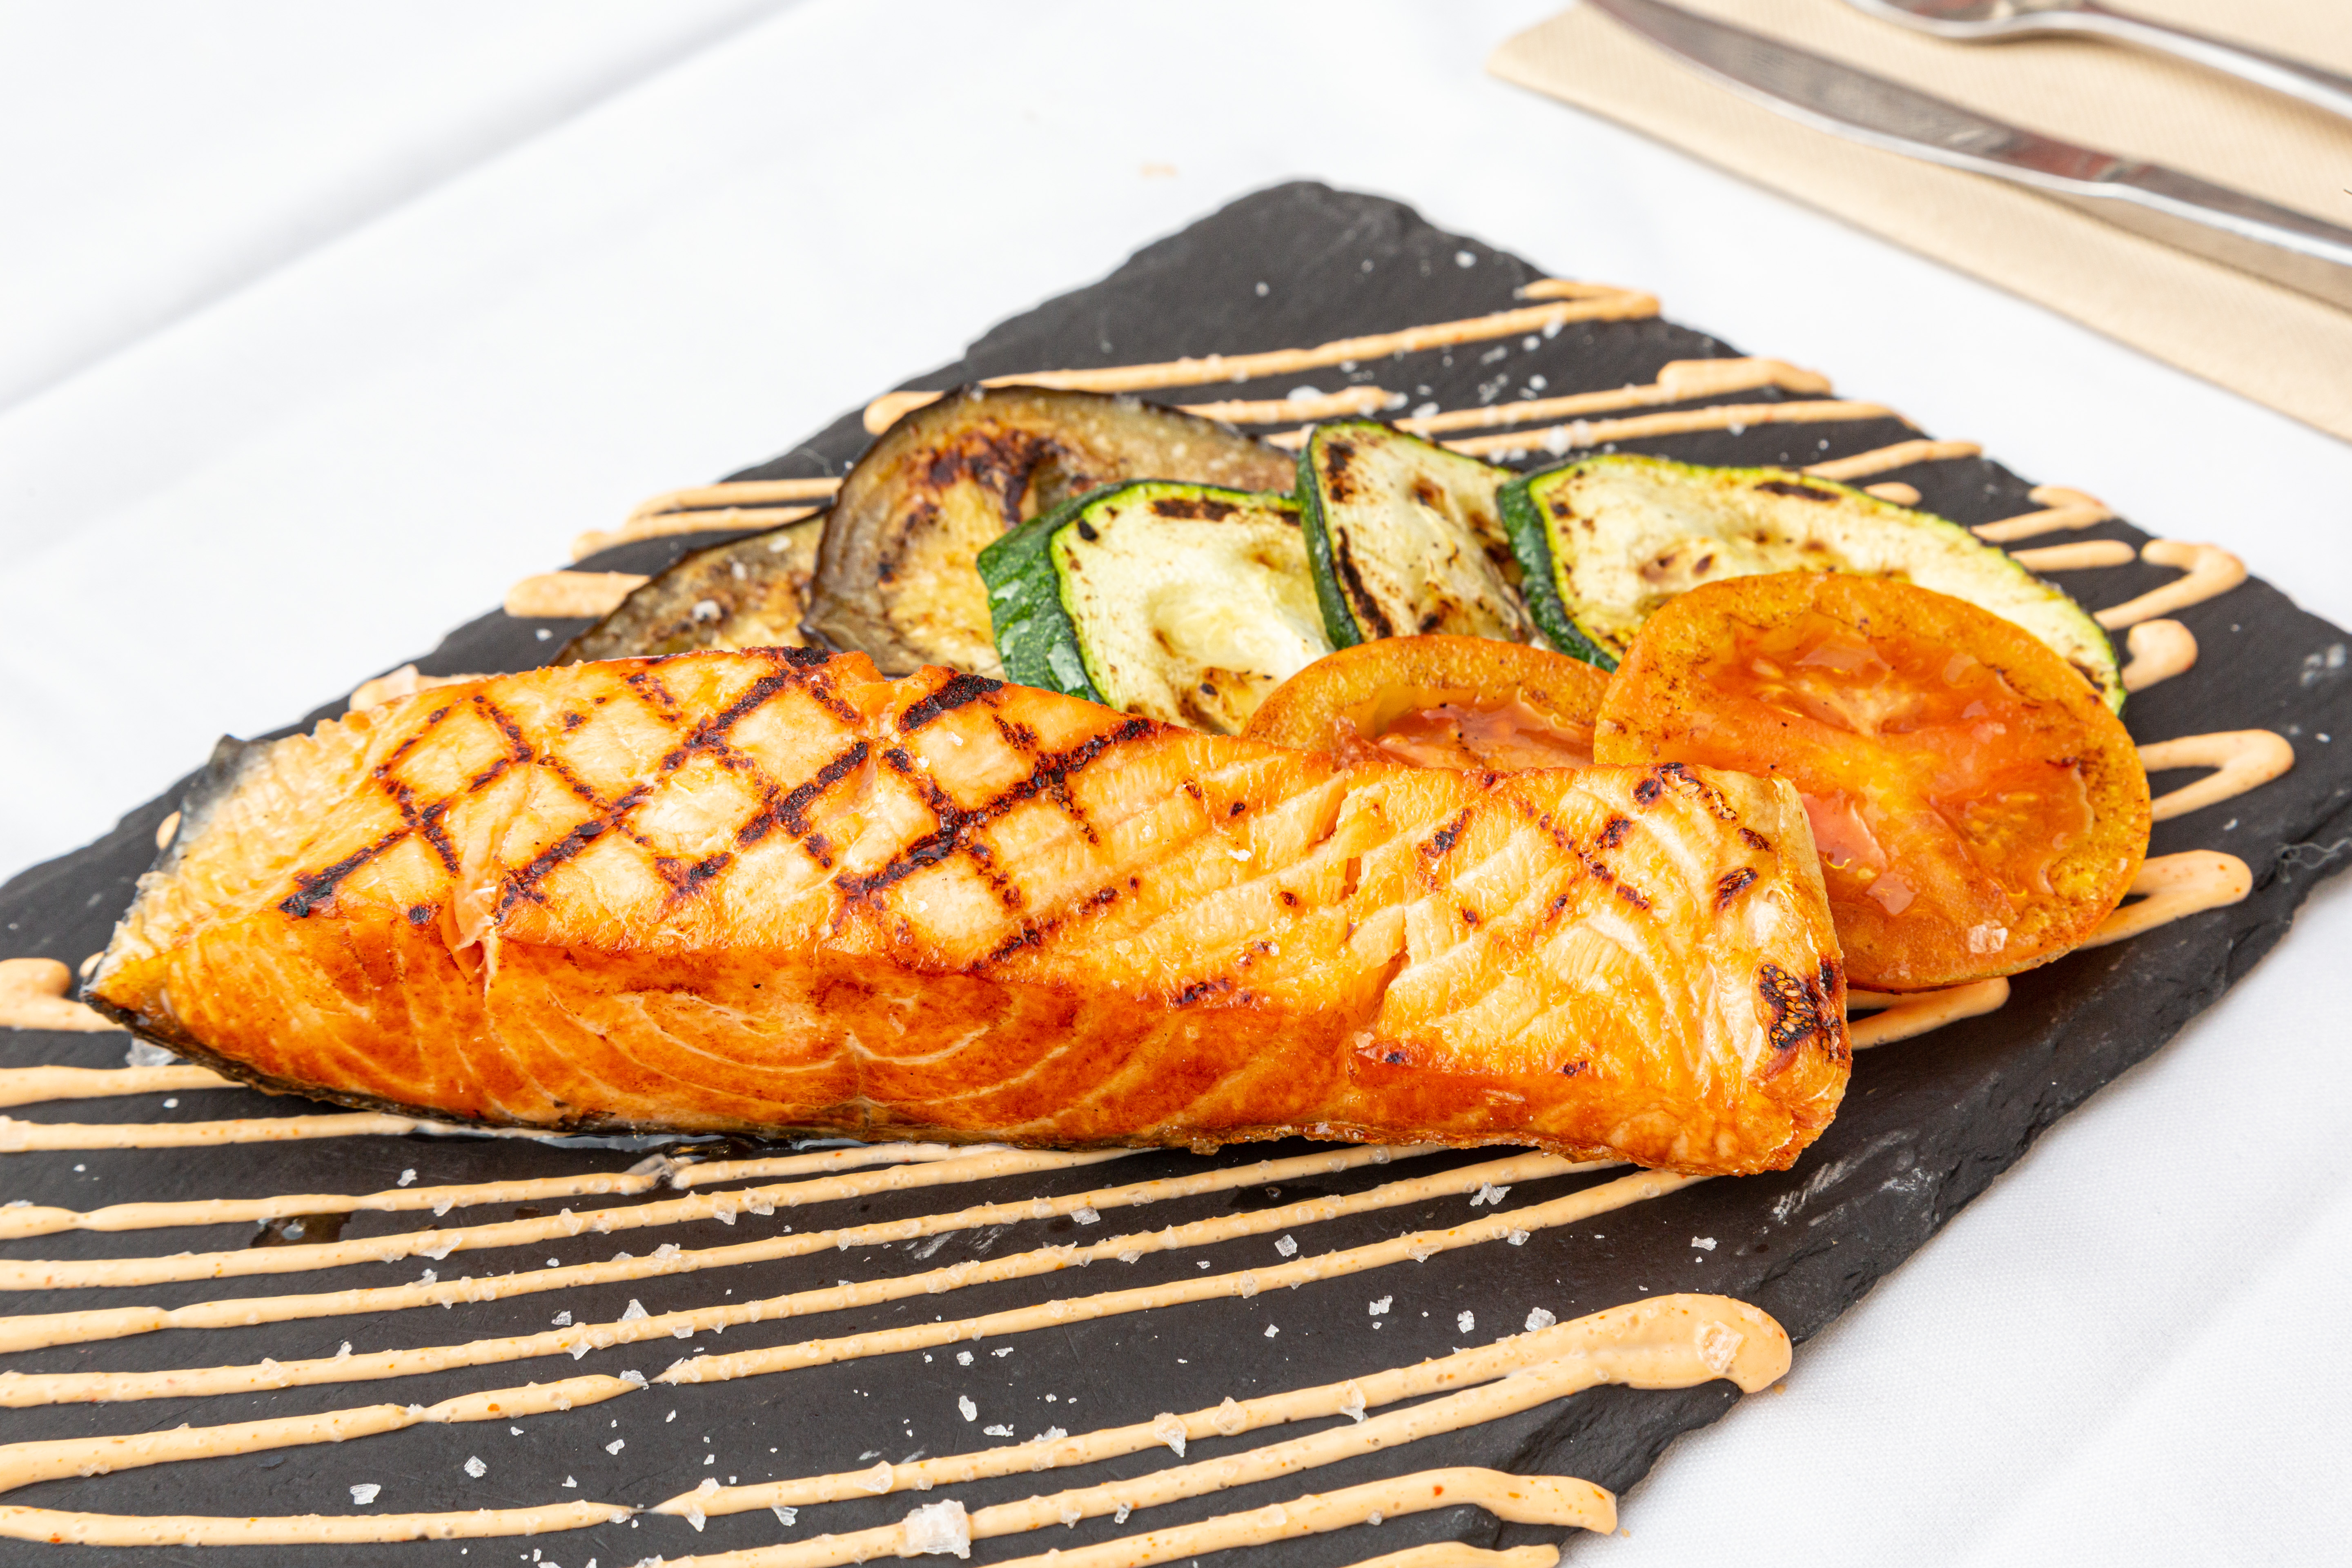 Salmone norvegese alla griglia con verdure di stagione con un tocco di siracha.